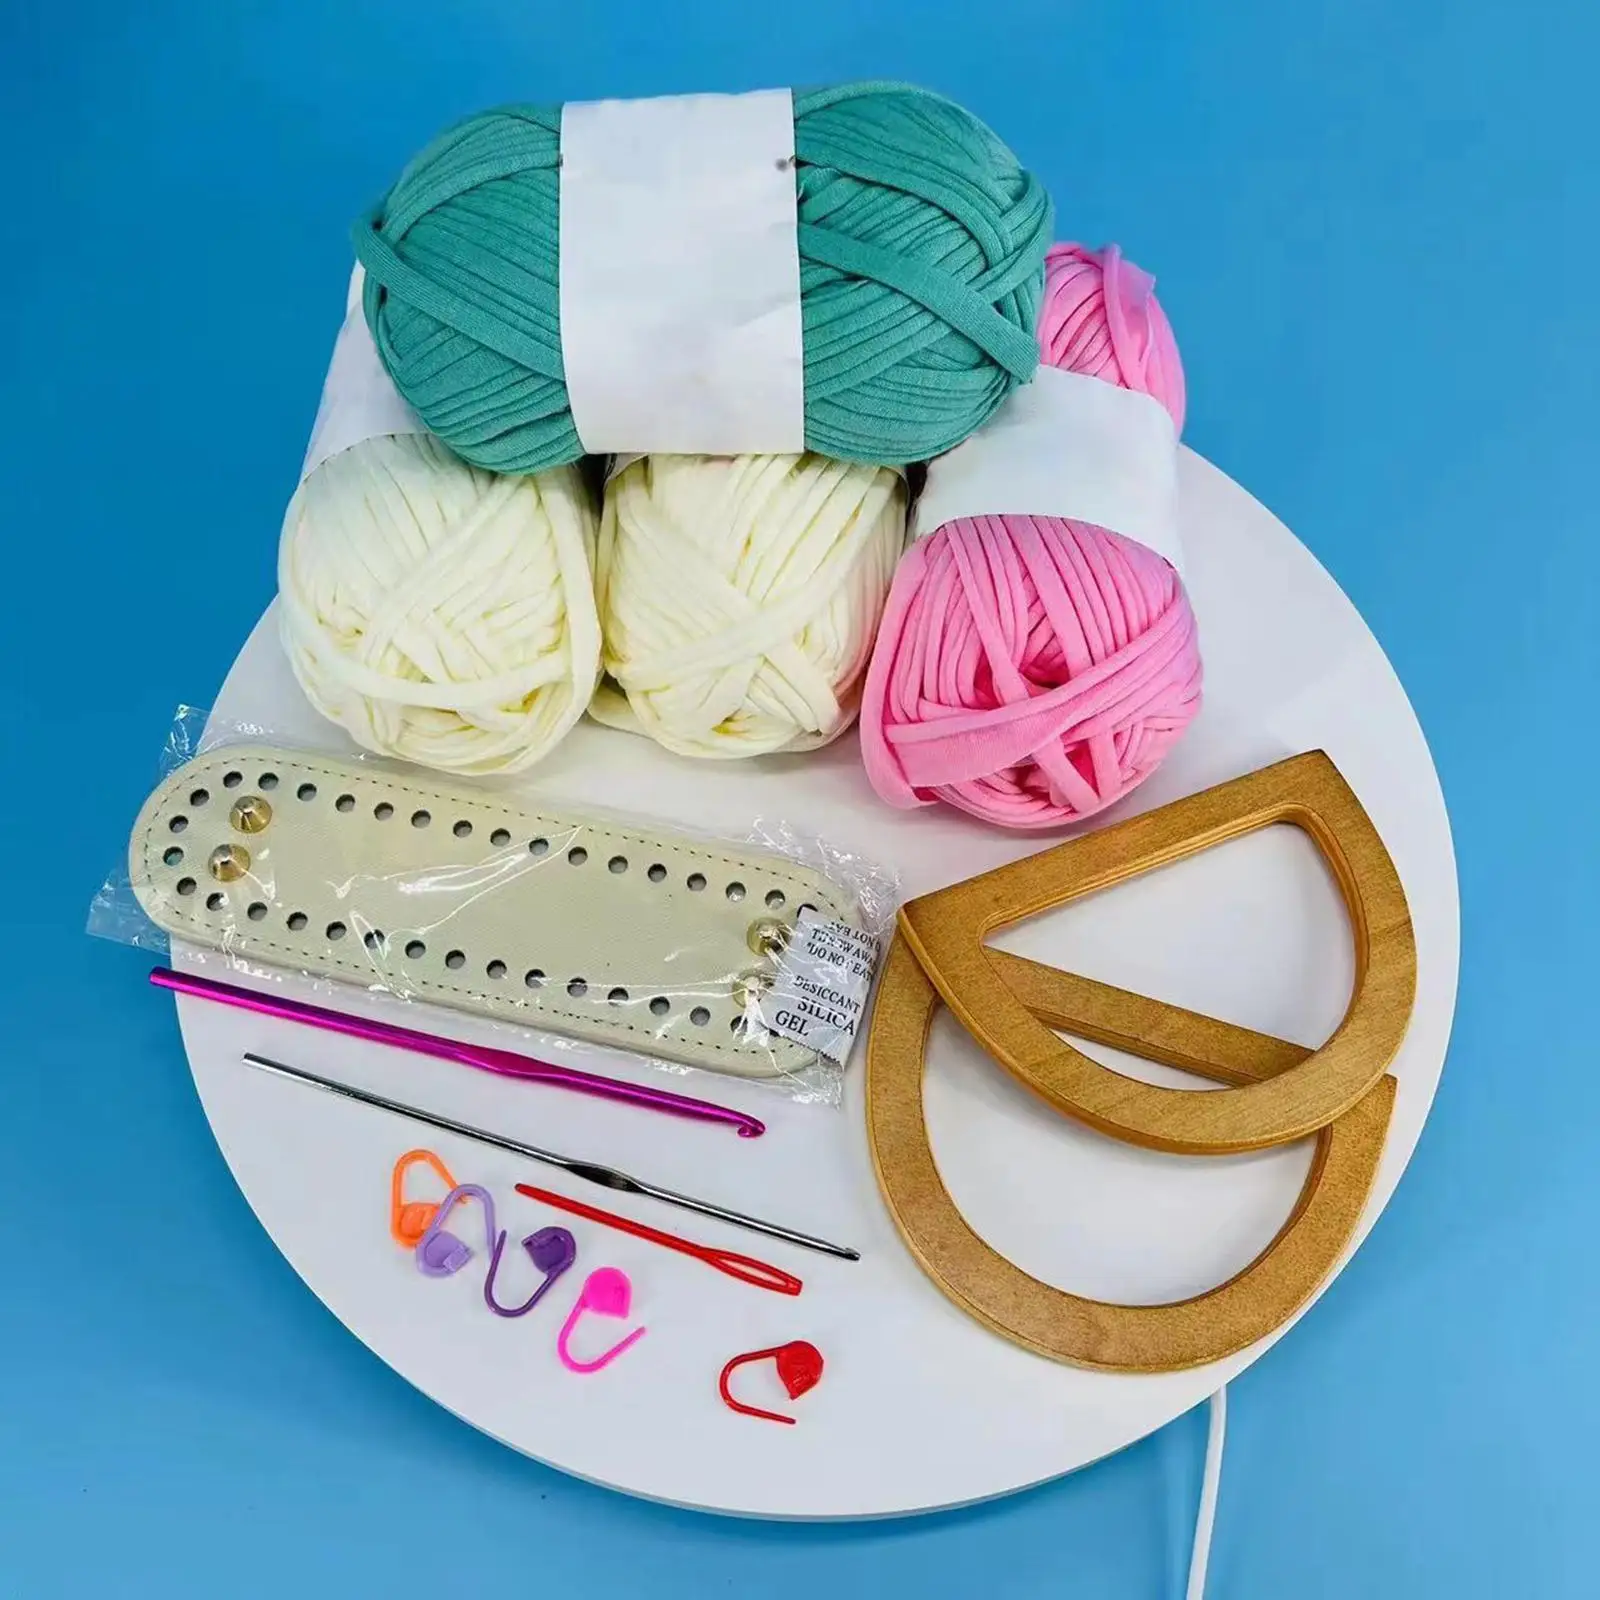 4 Rolls Weaving Thread Bag Making Crochet Hooks Hand Knitting for Handmade Bag Handbag Purse Carpet